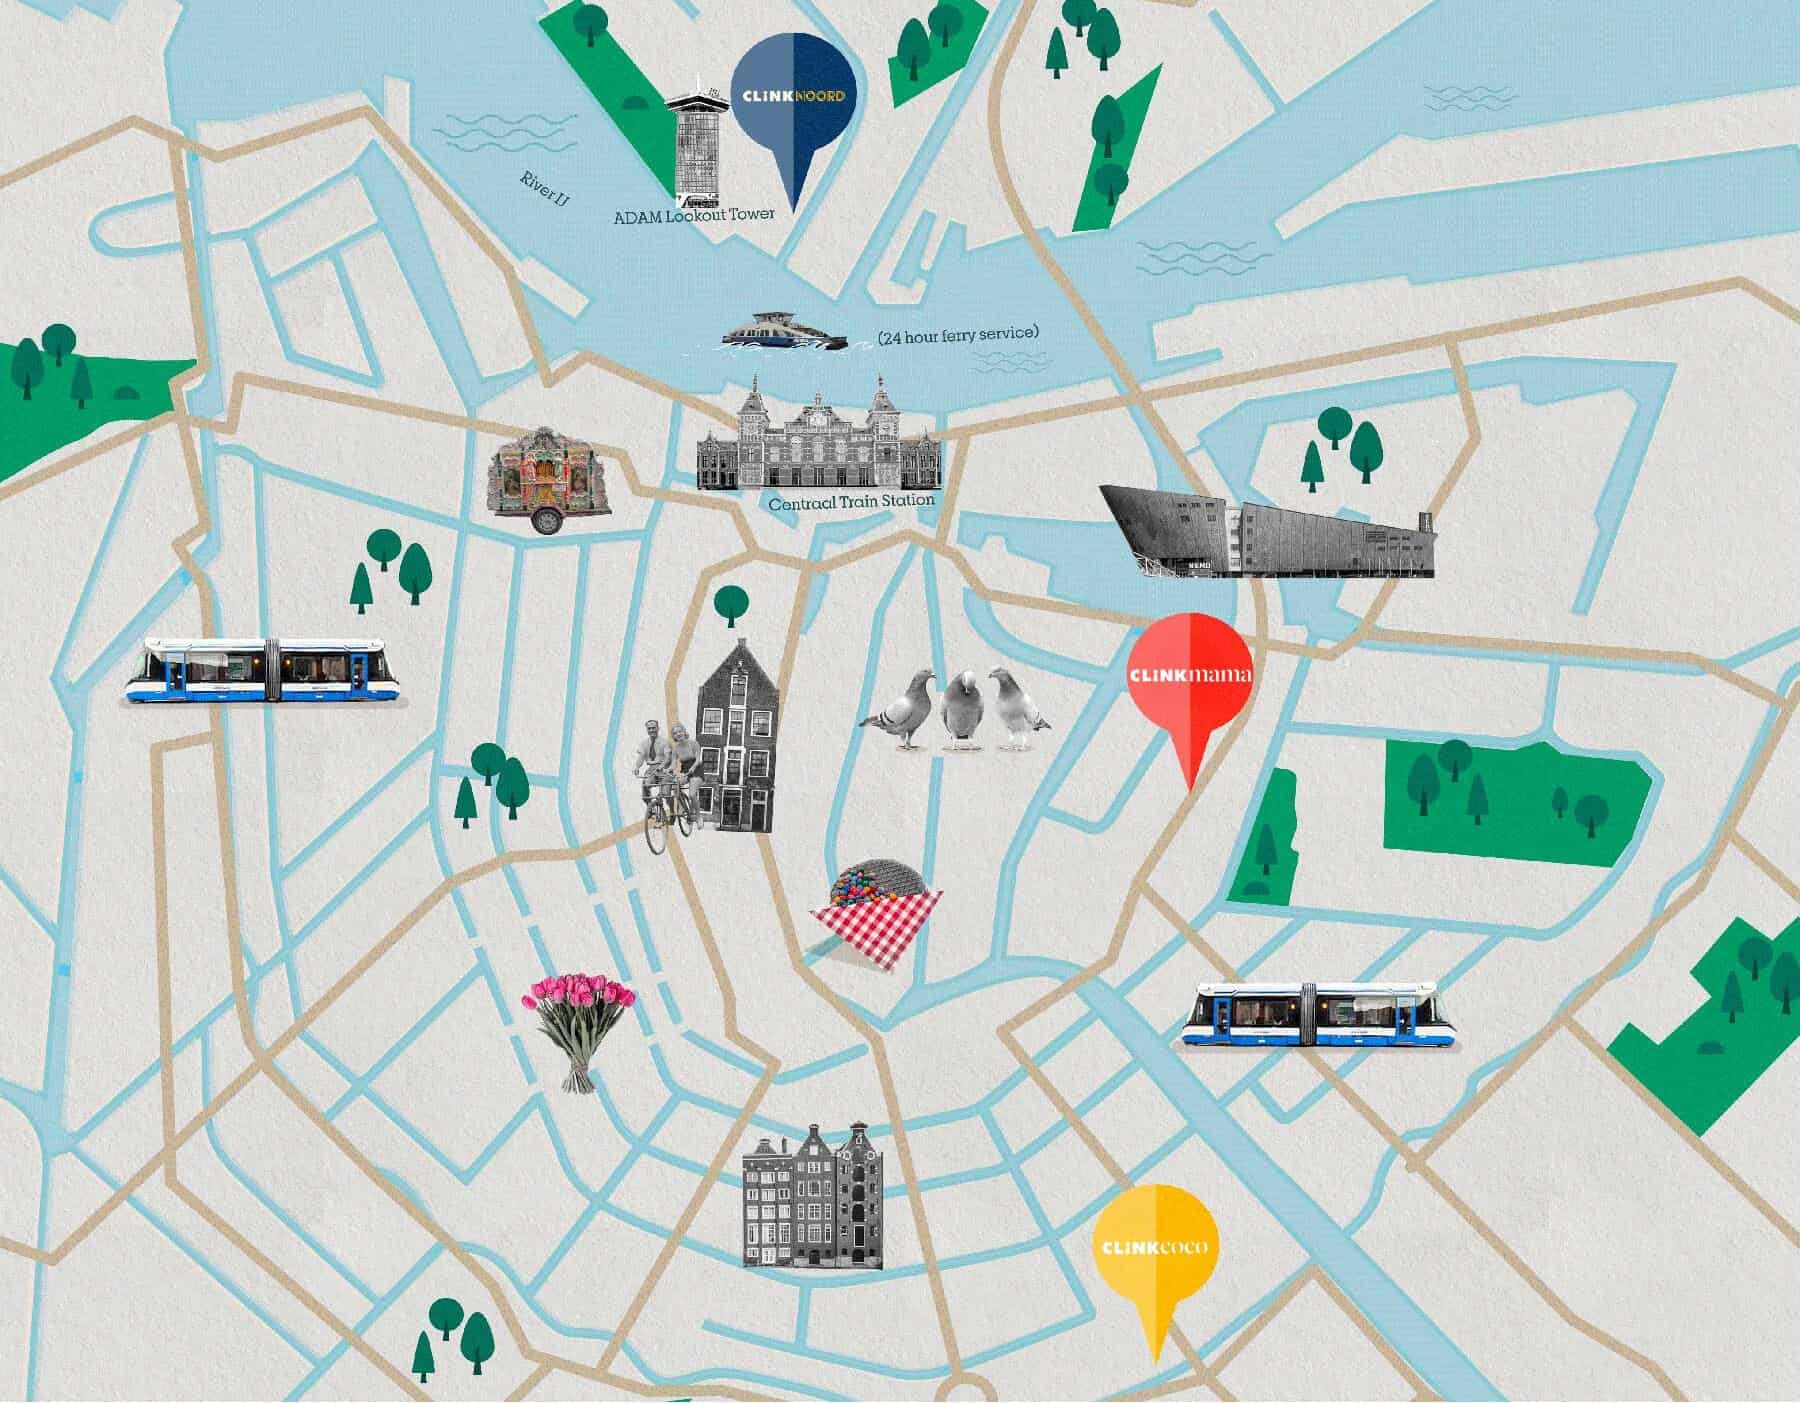 Stadtplan von Amsterdam mit ClinkNOORD, ClinkMama, ClinkCoco und touristischen Attraktionen